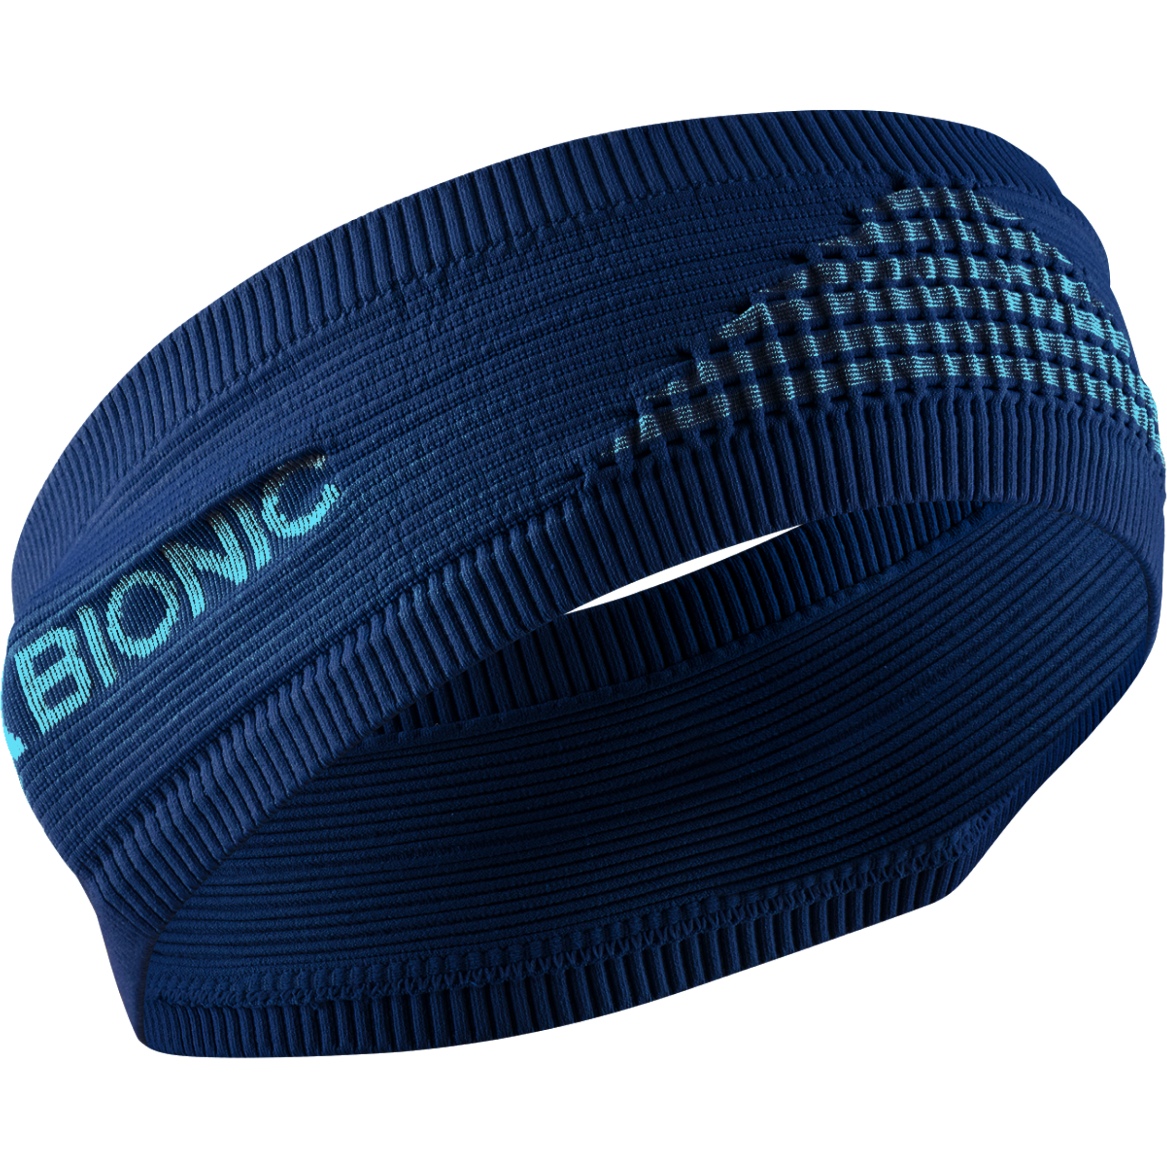 Produktbild von X-Bionic Stirnband 4.0 - navy/blue